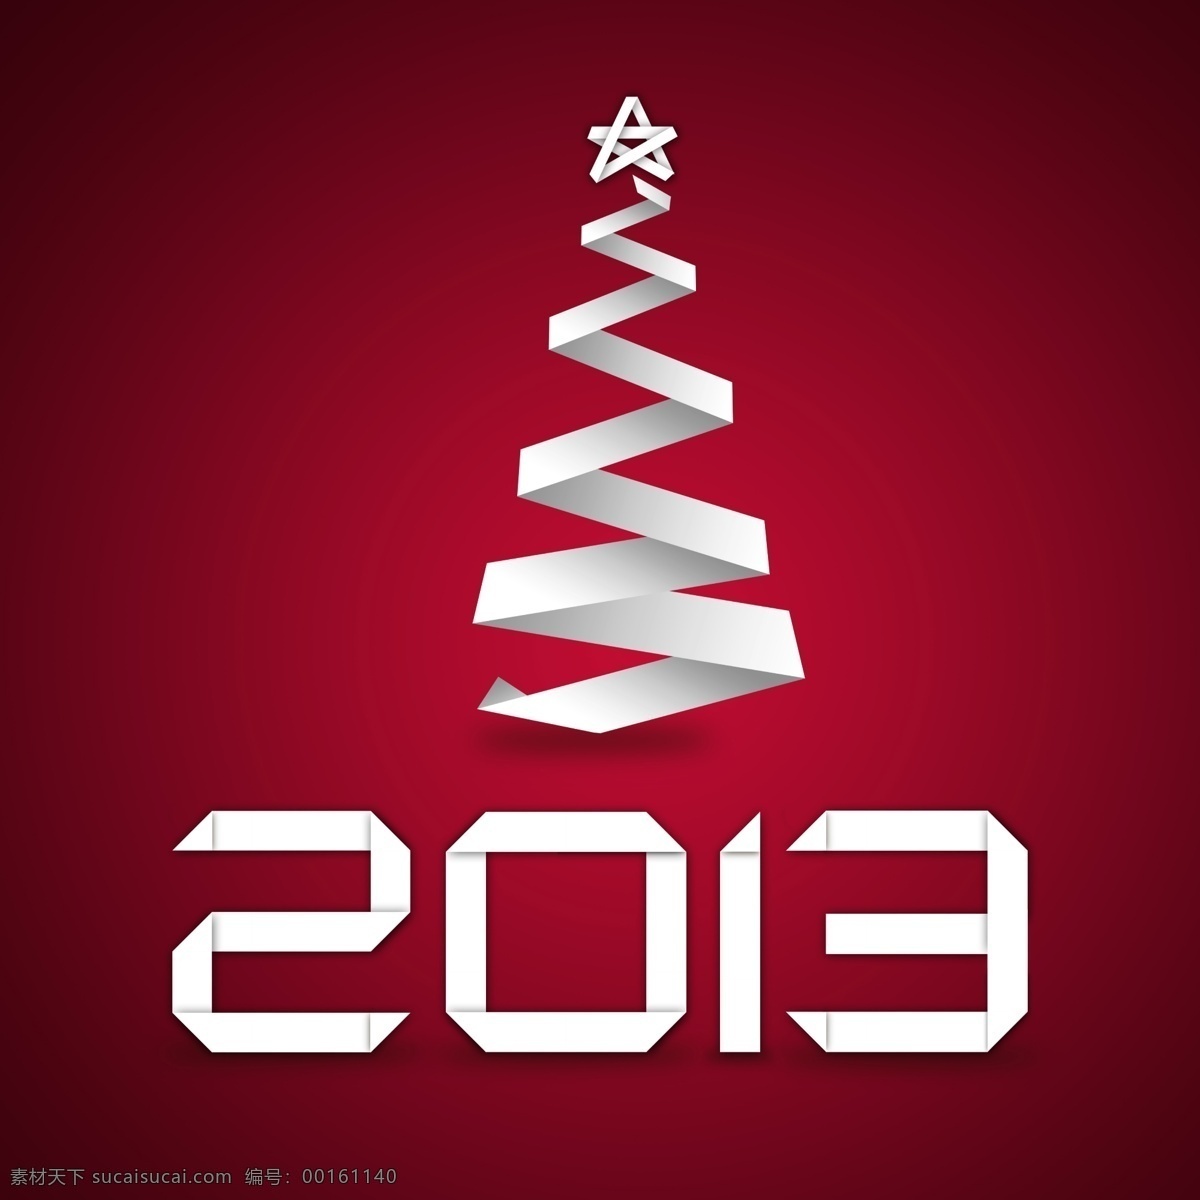 2013 圣诞树 主题 圣诞 背景 图 插画 创意 模板 设计稿 圣诞节 新年 折纸 五角星 节日大全 源文件 节日素材